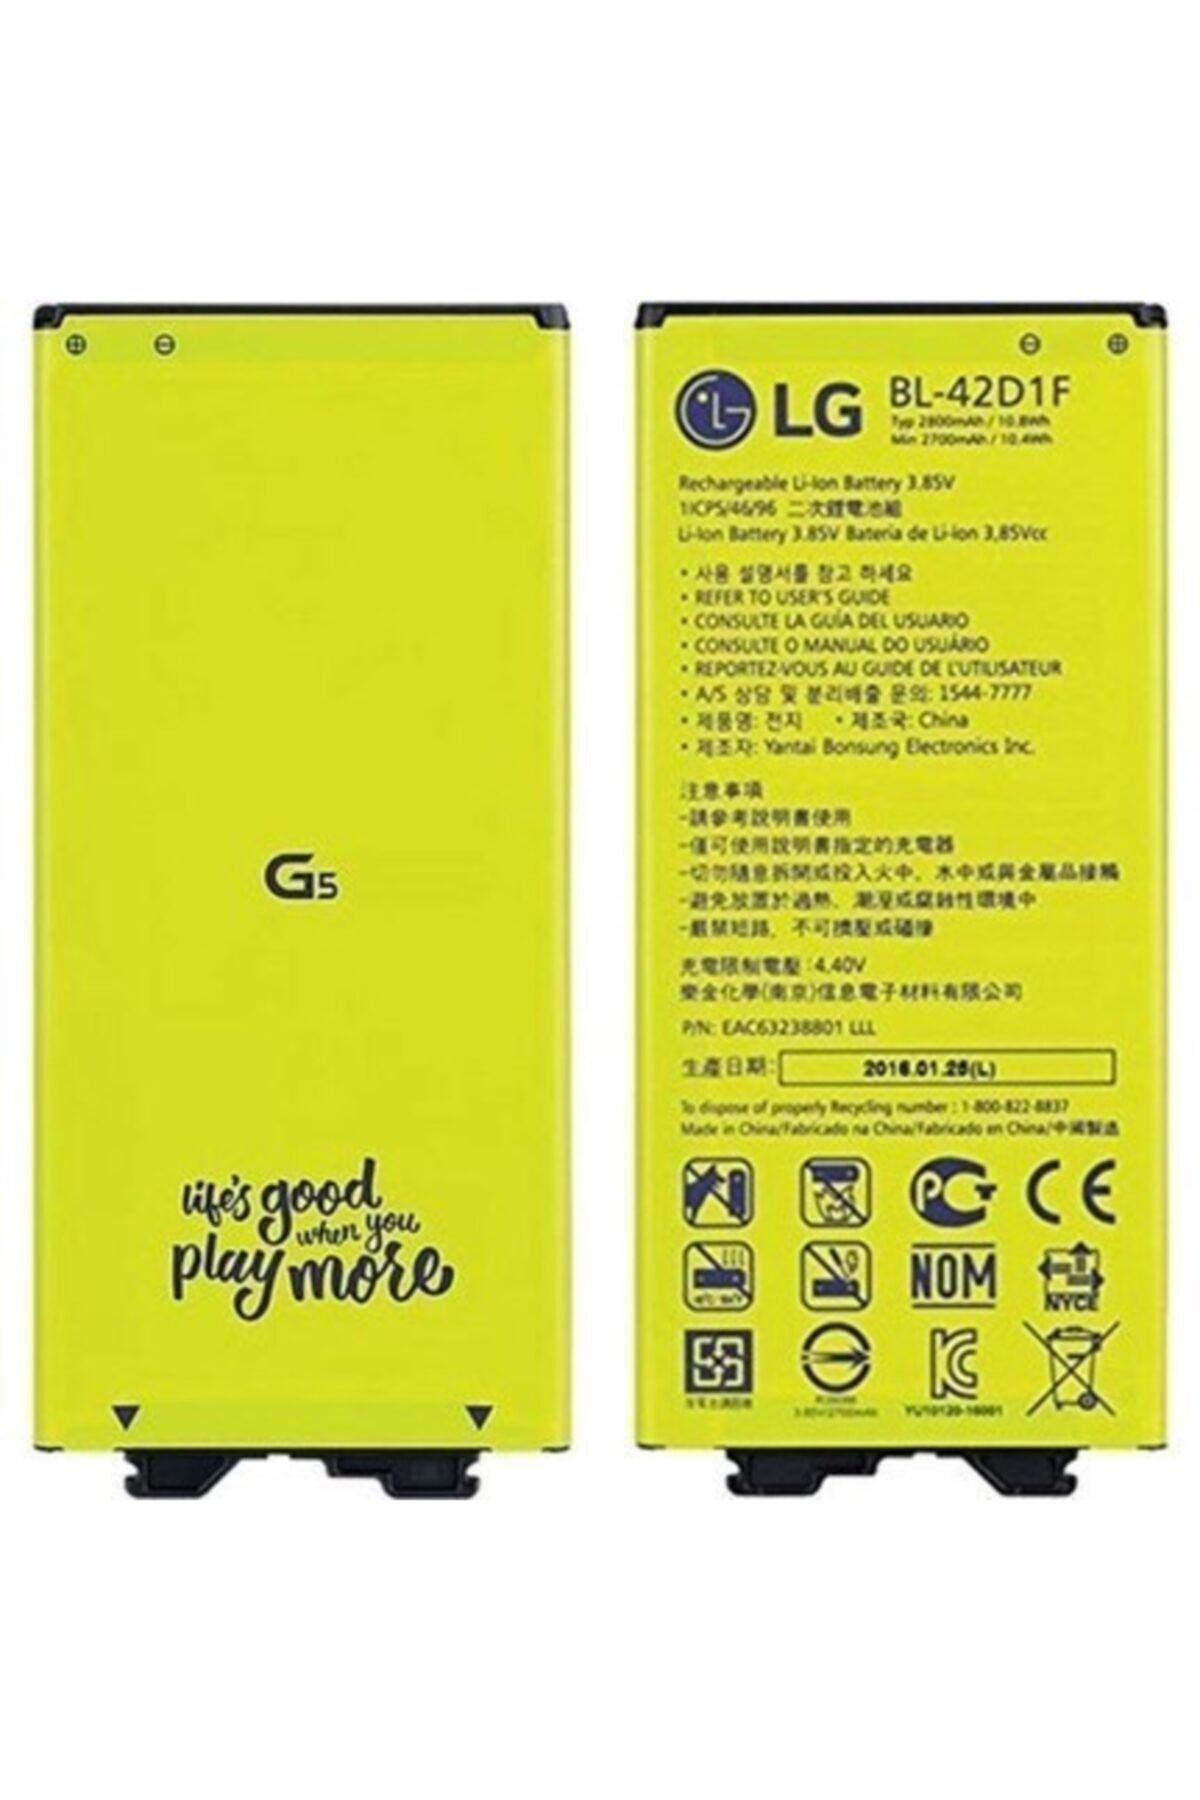 LG G5 Için Bl-42d1f 2750 Mah Batarya